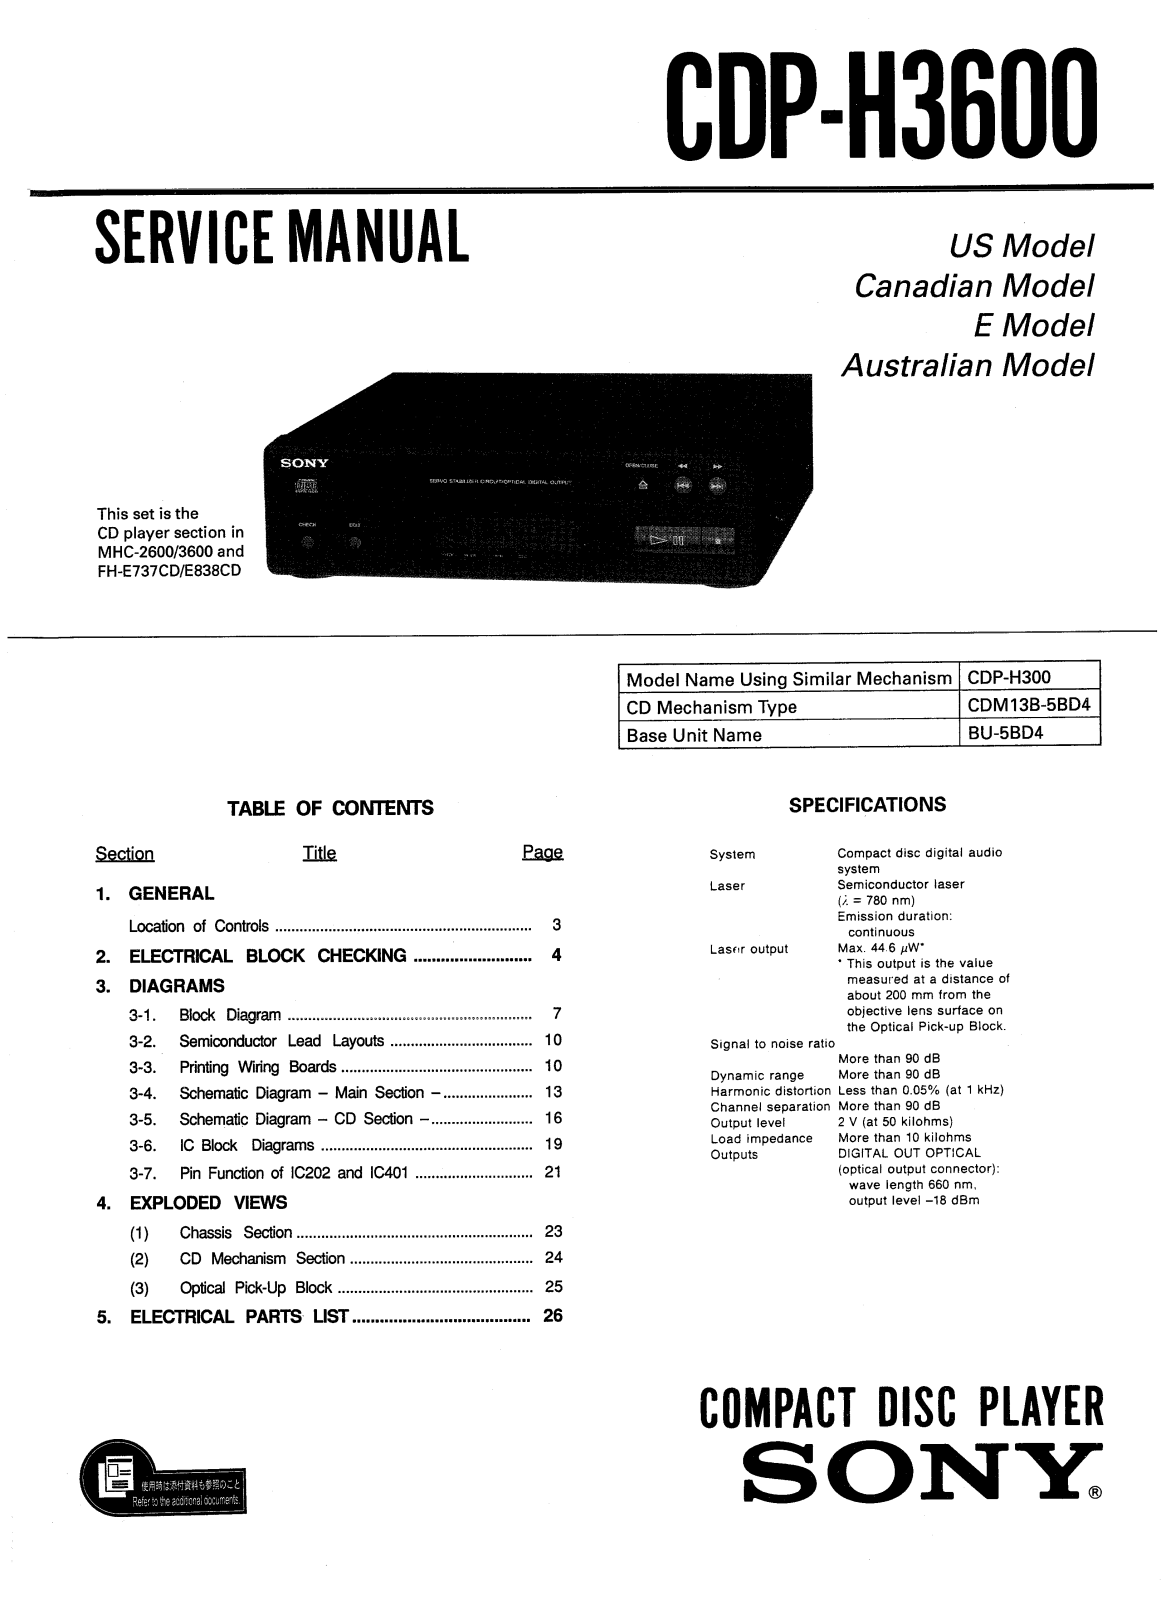 Sony CDPH-3600 Service manual